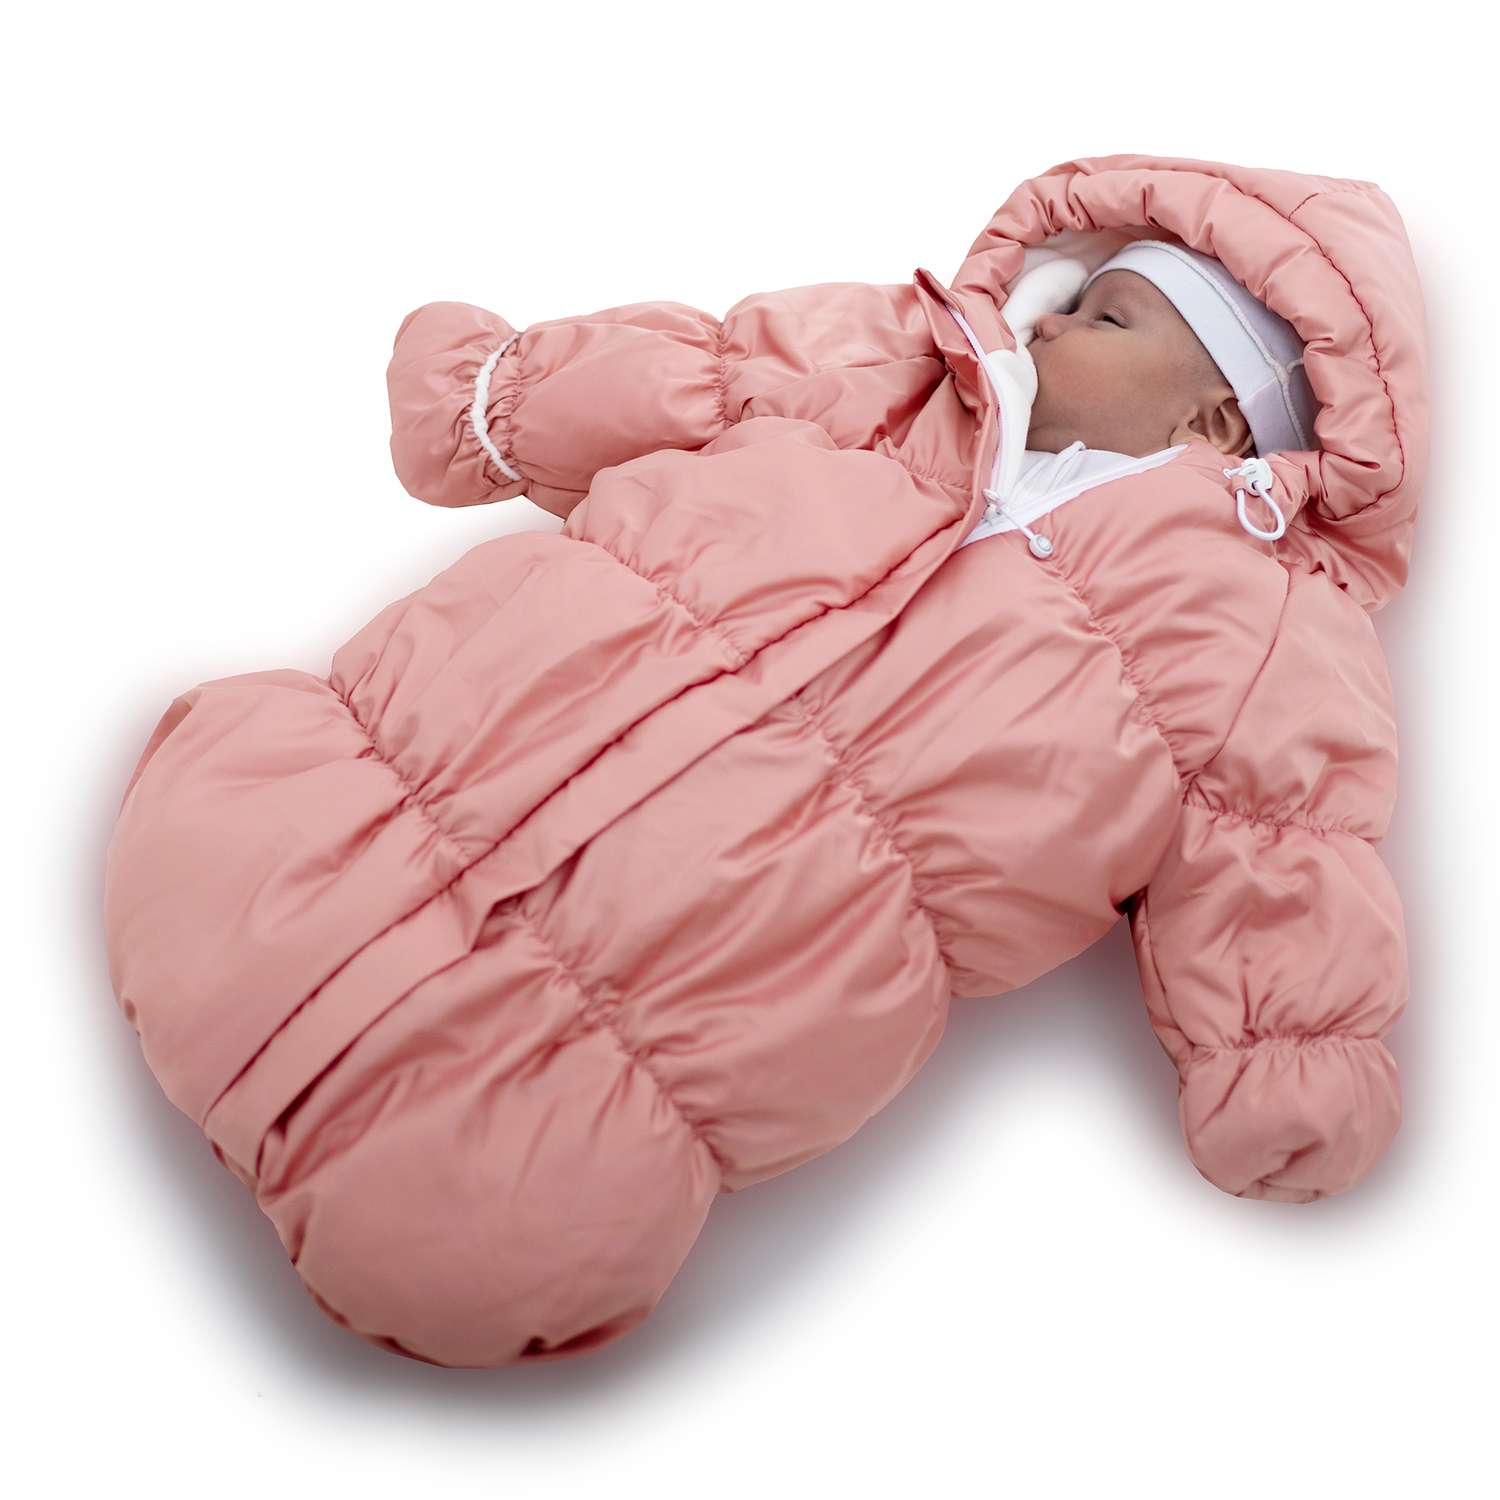 Конверт для новорожденного inlovery на выписку/в коляску «Маршмеллоу» розовый - фото 7